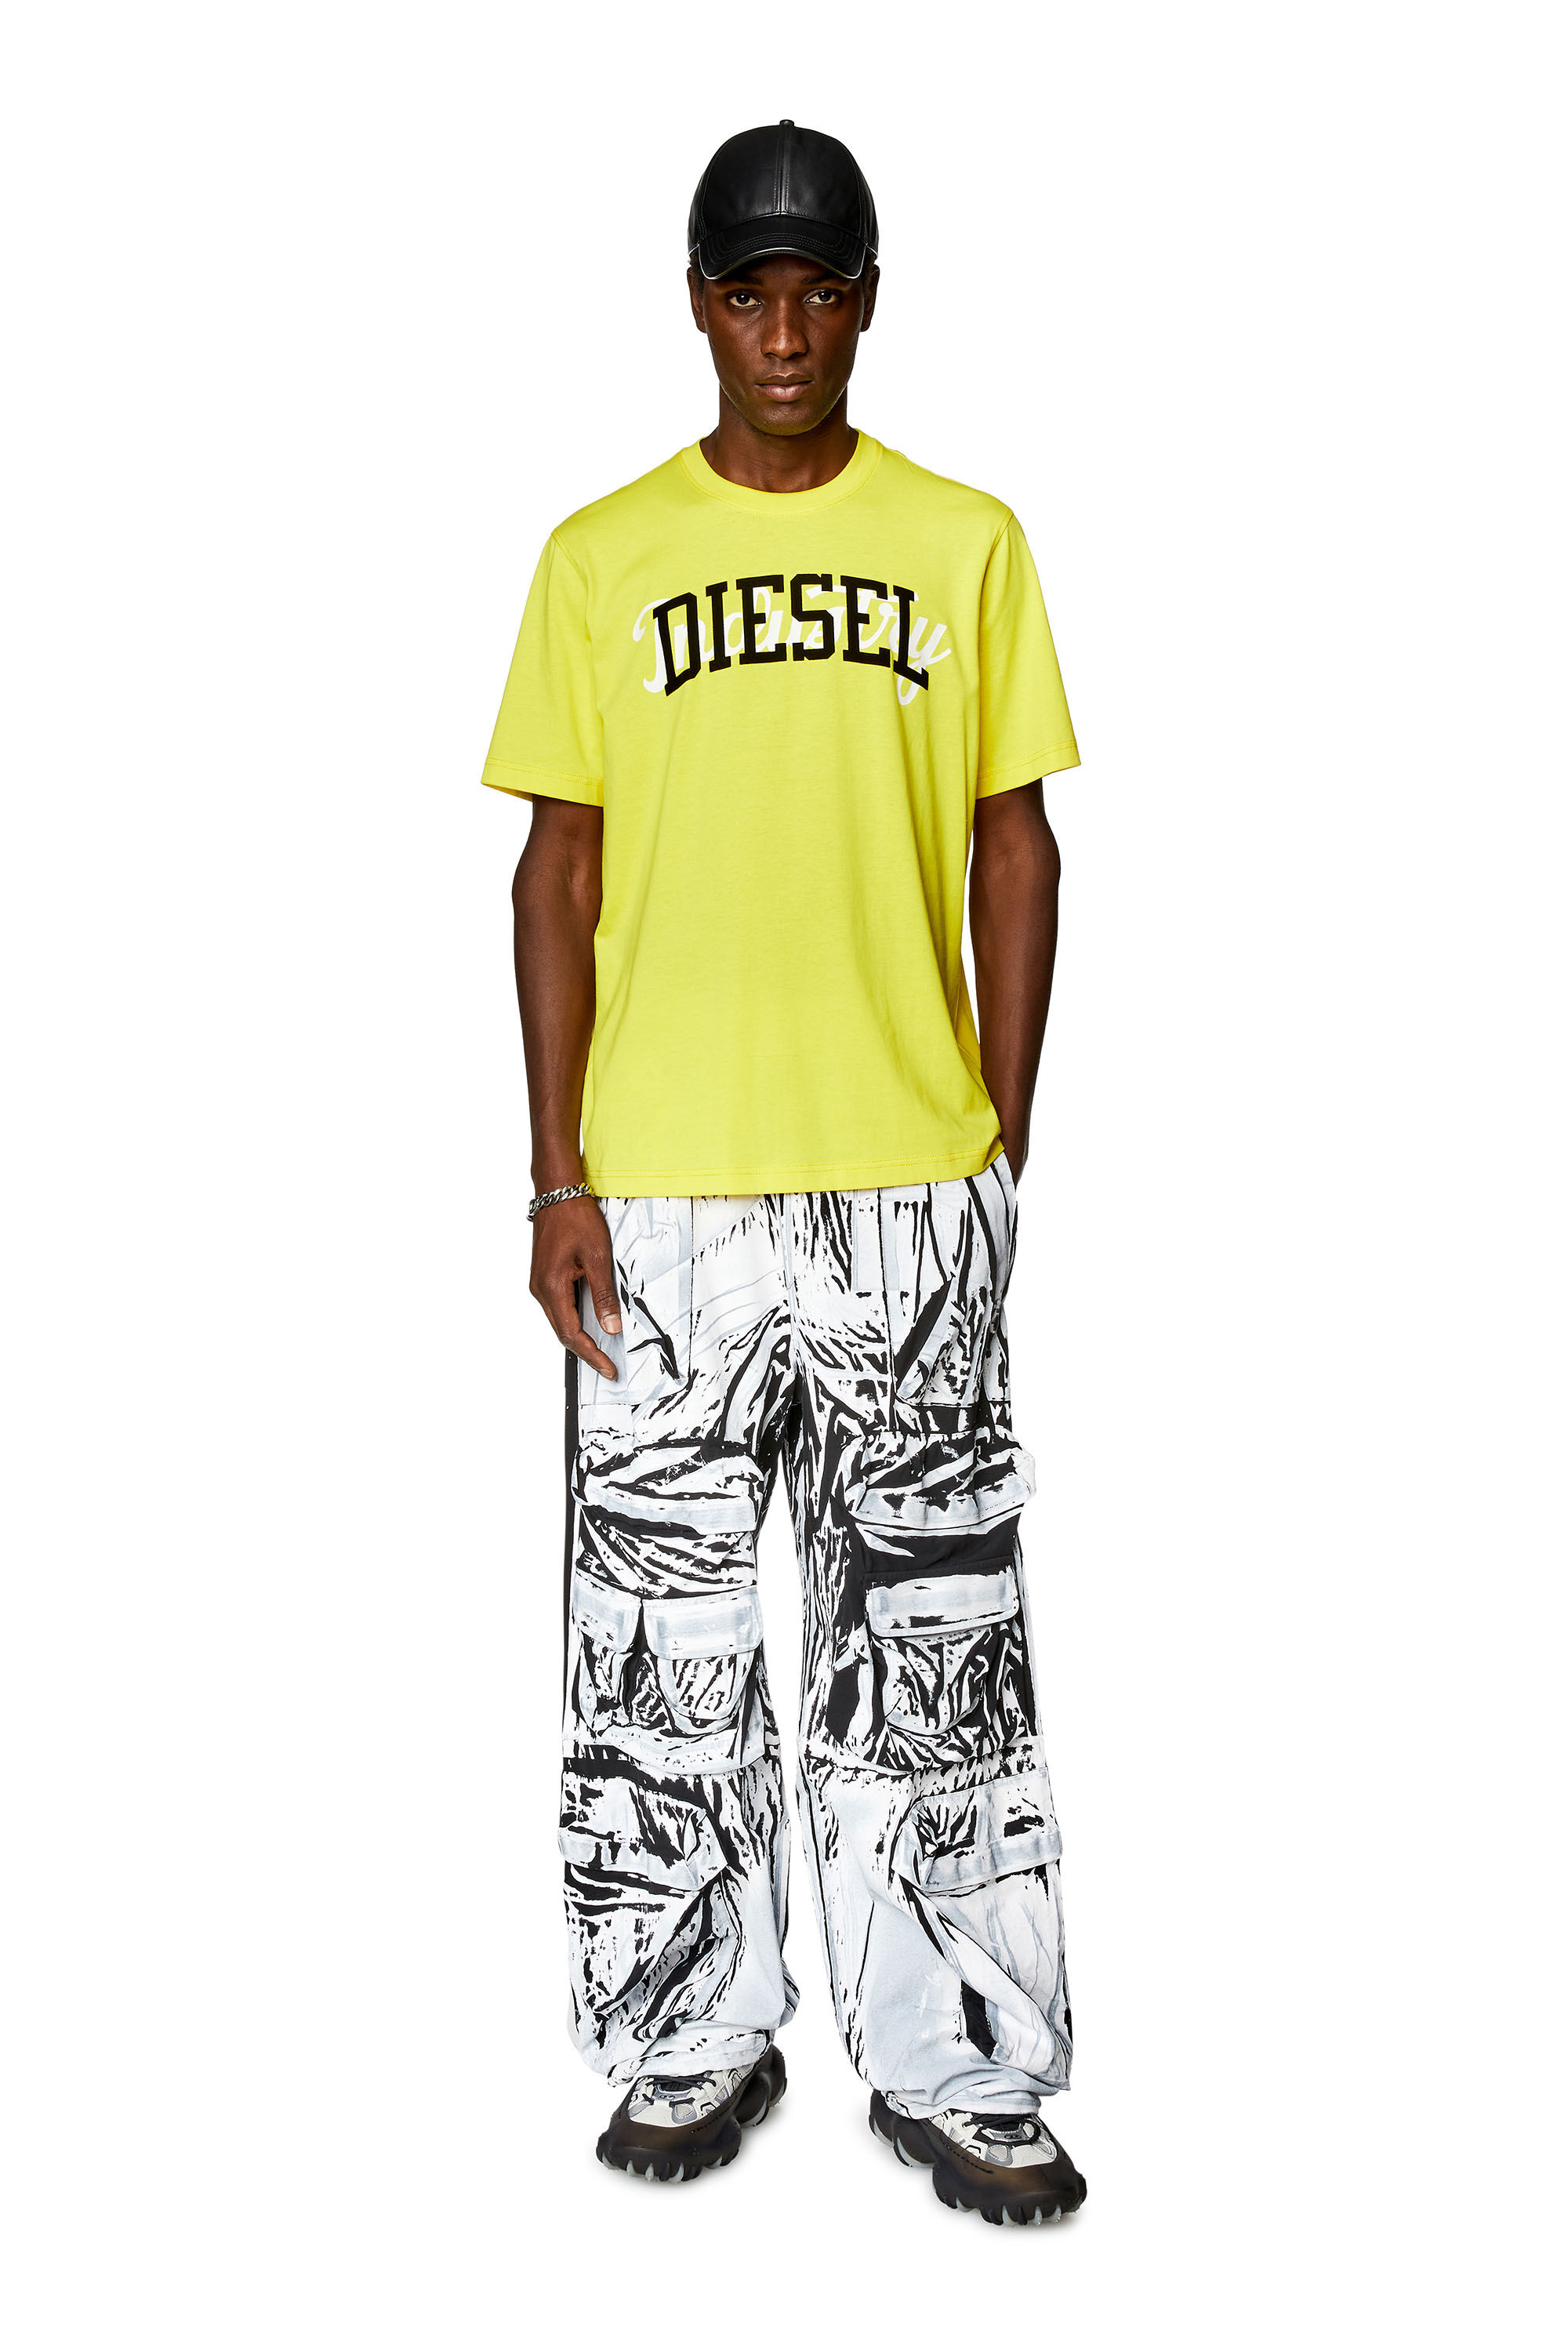 Diesel - T-JUST-N10, Homme T-shirt avec imprimés Diesel contrastés in Jaune - Image 1